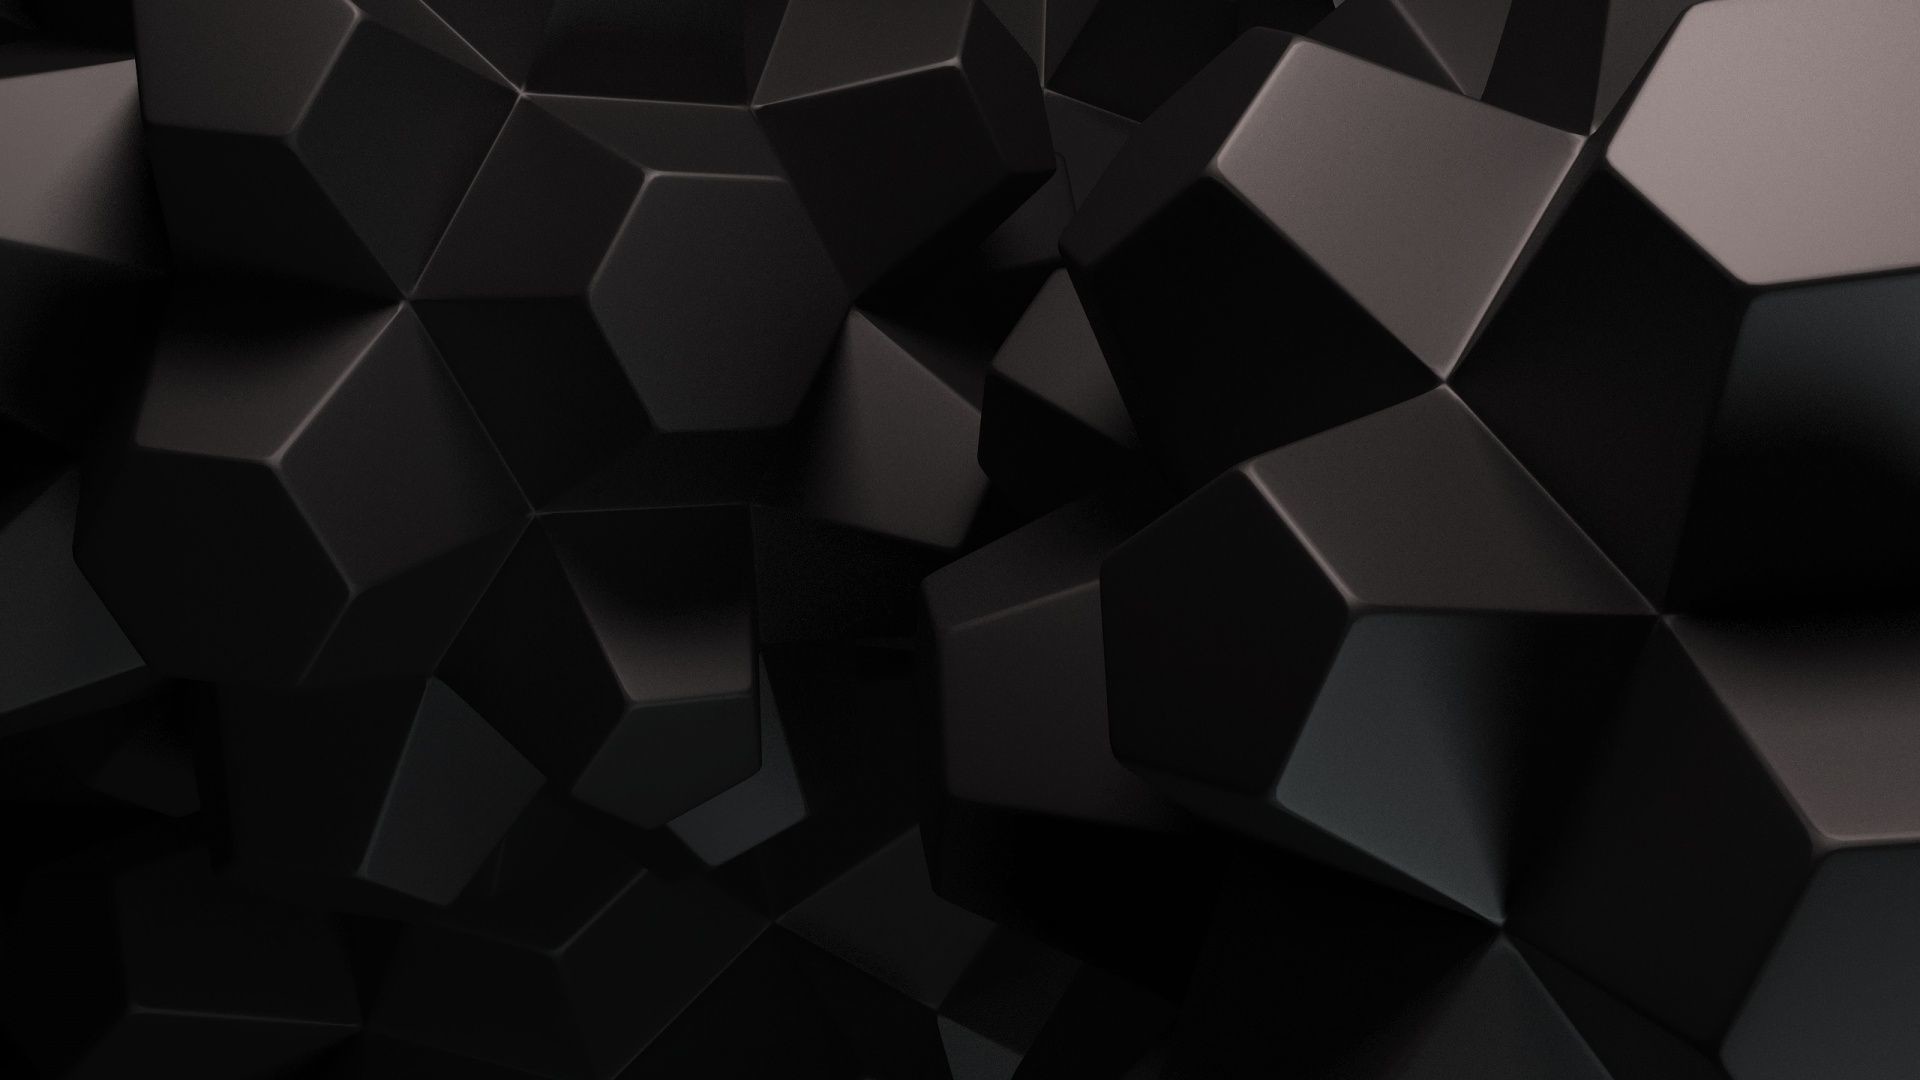 Black Abstract Wallpaper 1080p #hh2 Abstract Wallpaper at